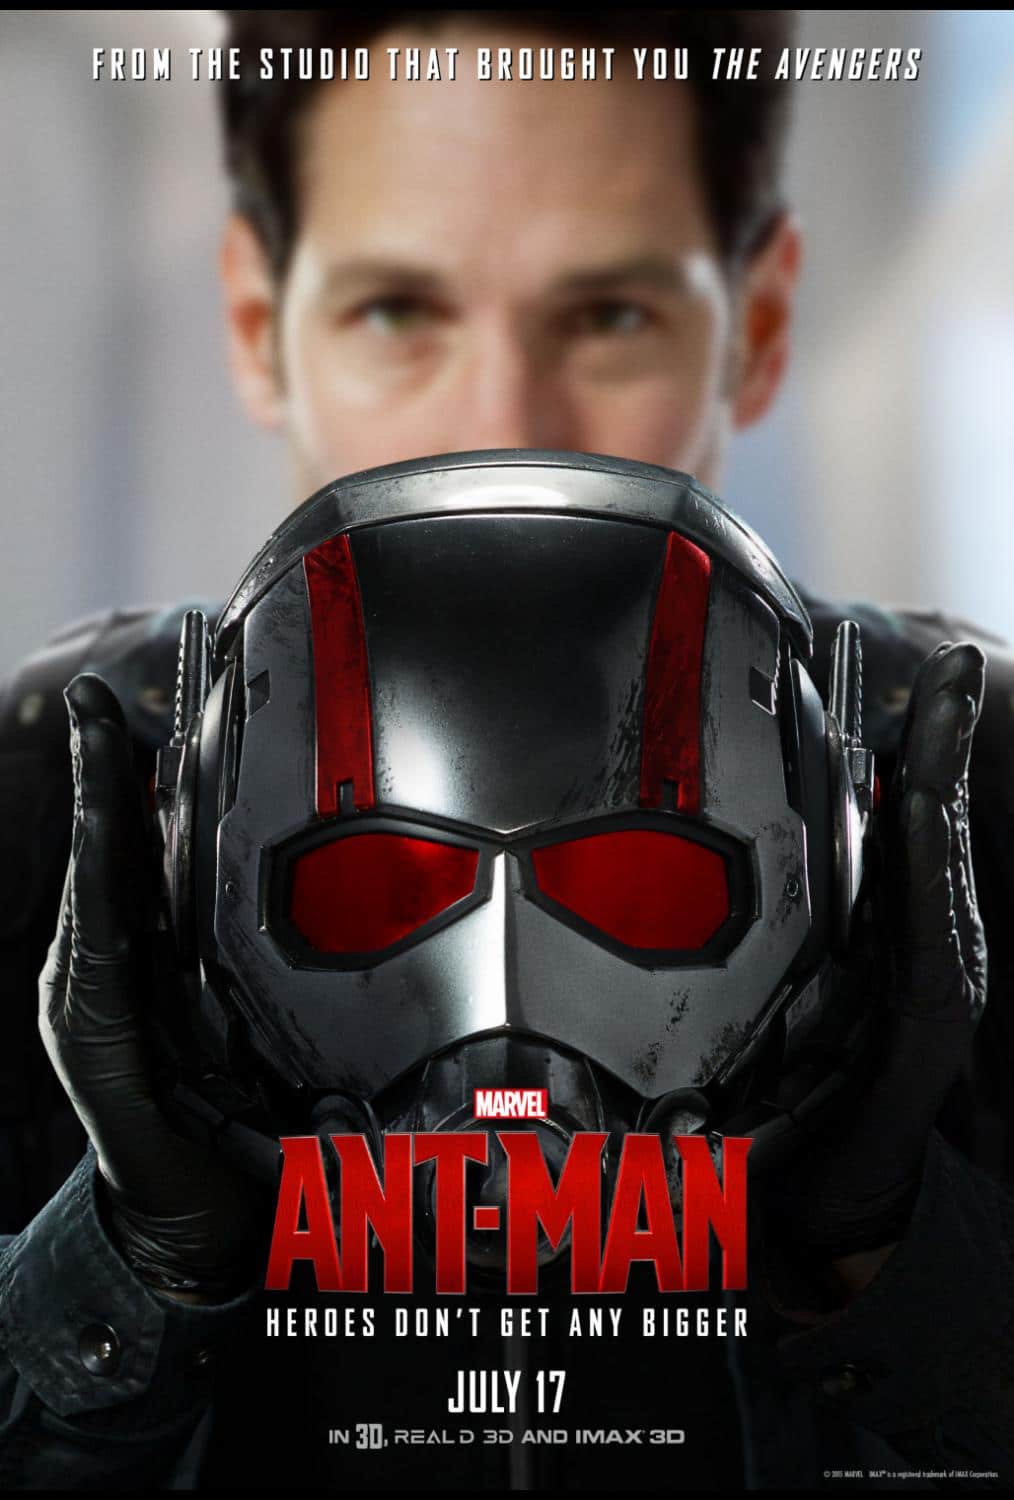 Ten Reason I Liked Marvel’s Ant-Man